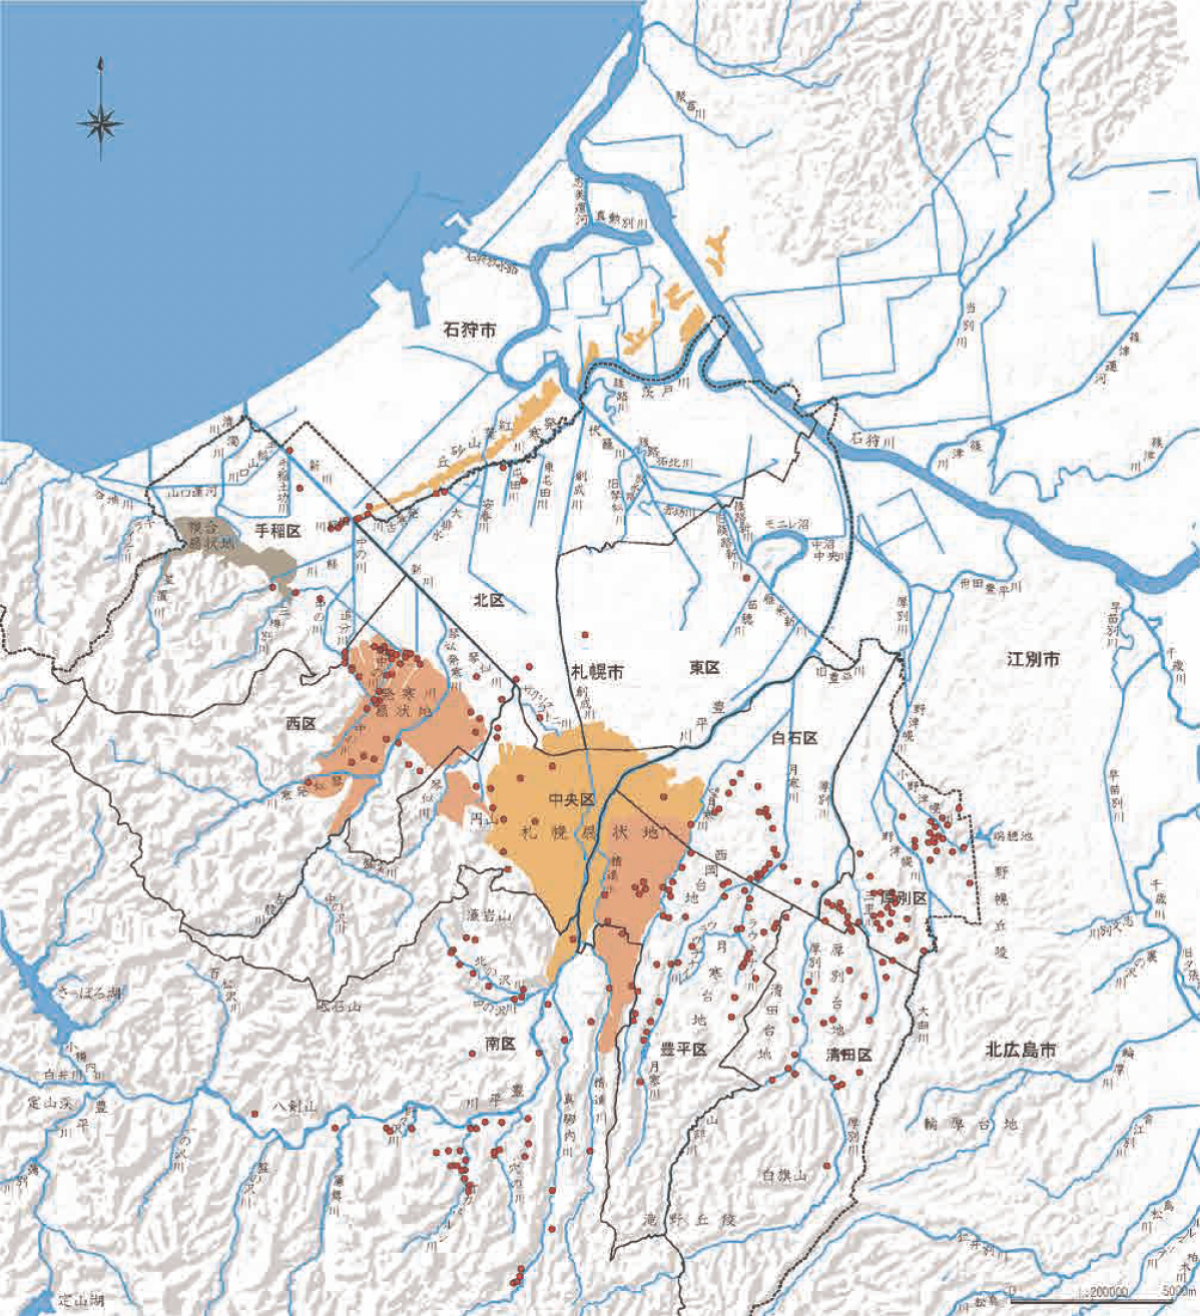 札幌市内の扇状地と縄文遺跡分布